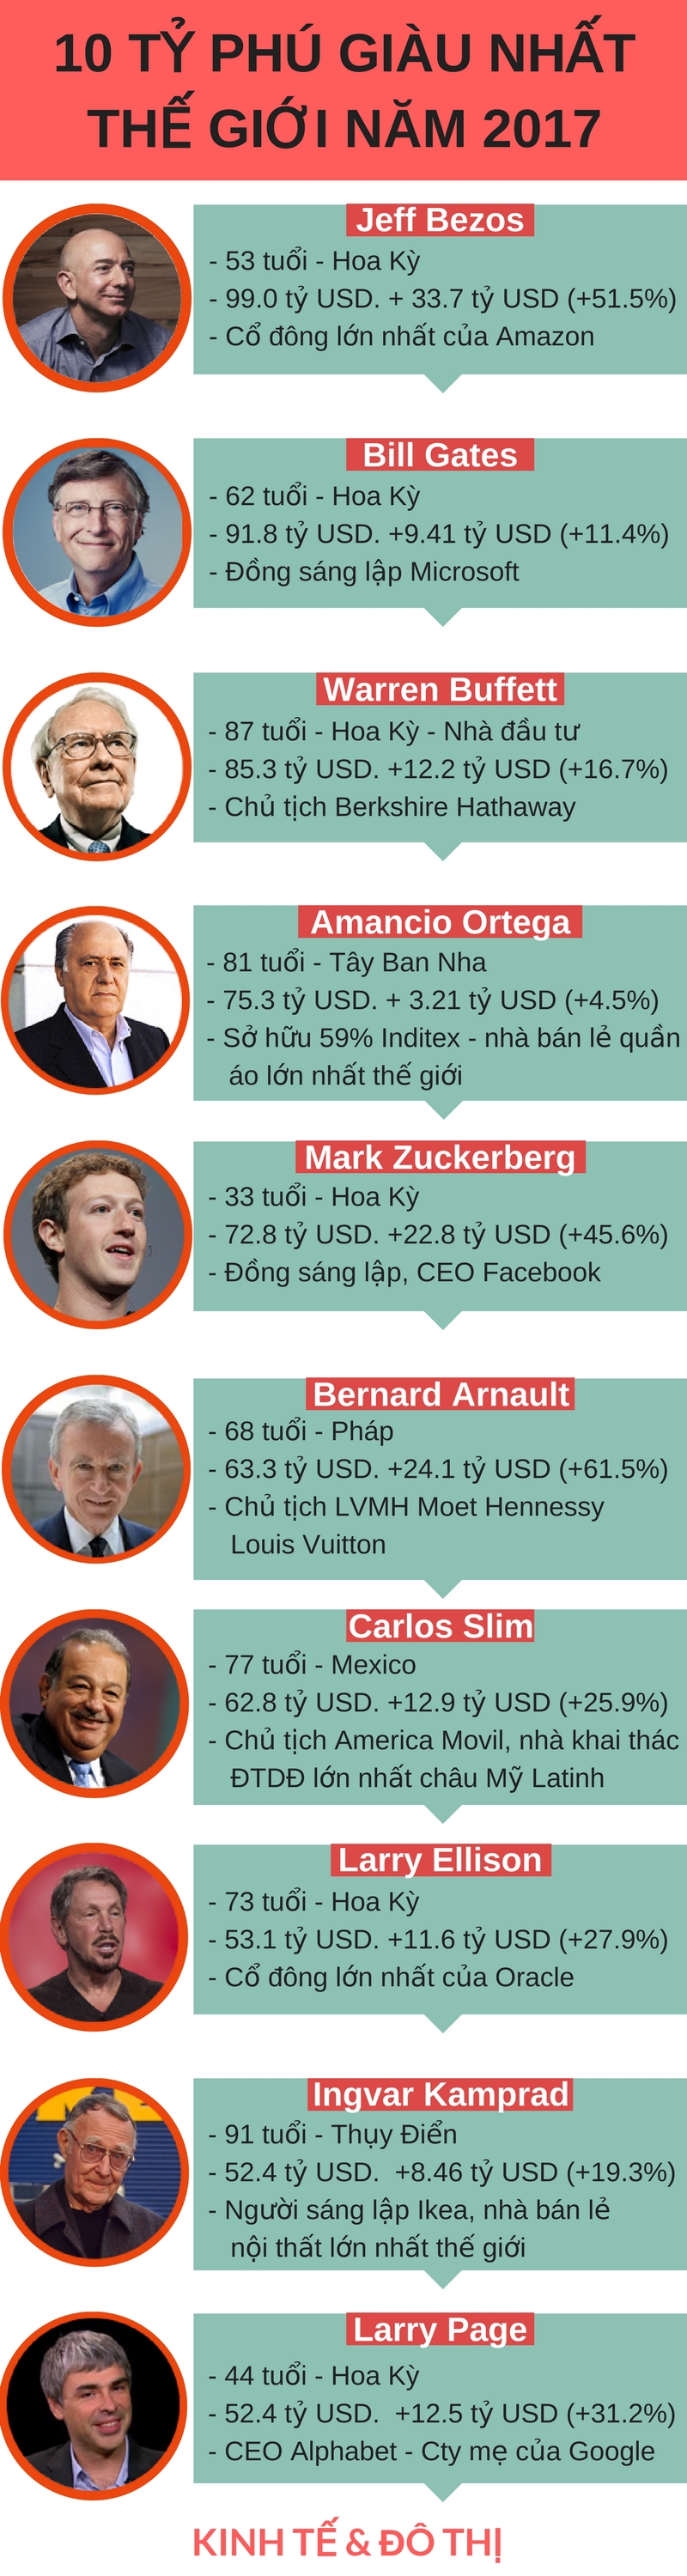 Infographic: Tài sản của người giàu nhất thế giới tăng 92 triệu USD mỗi ngày - Ảnh 1